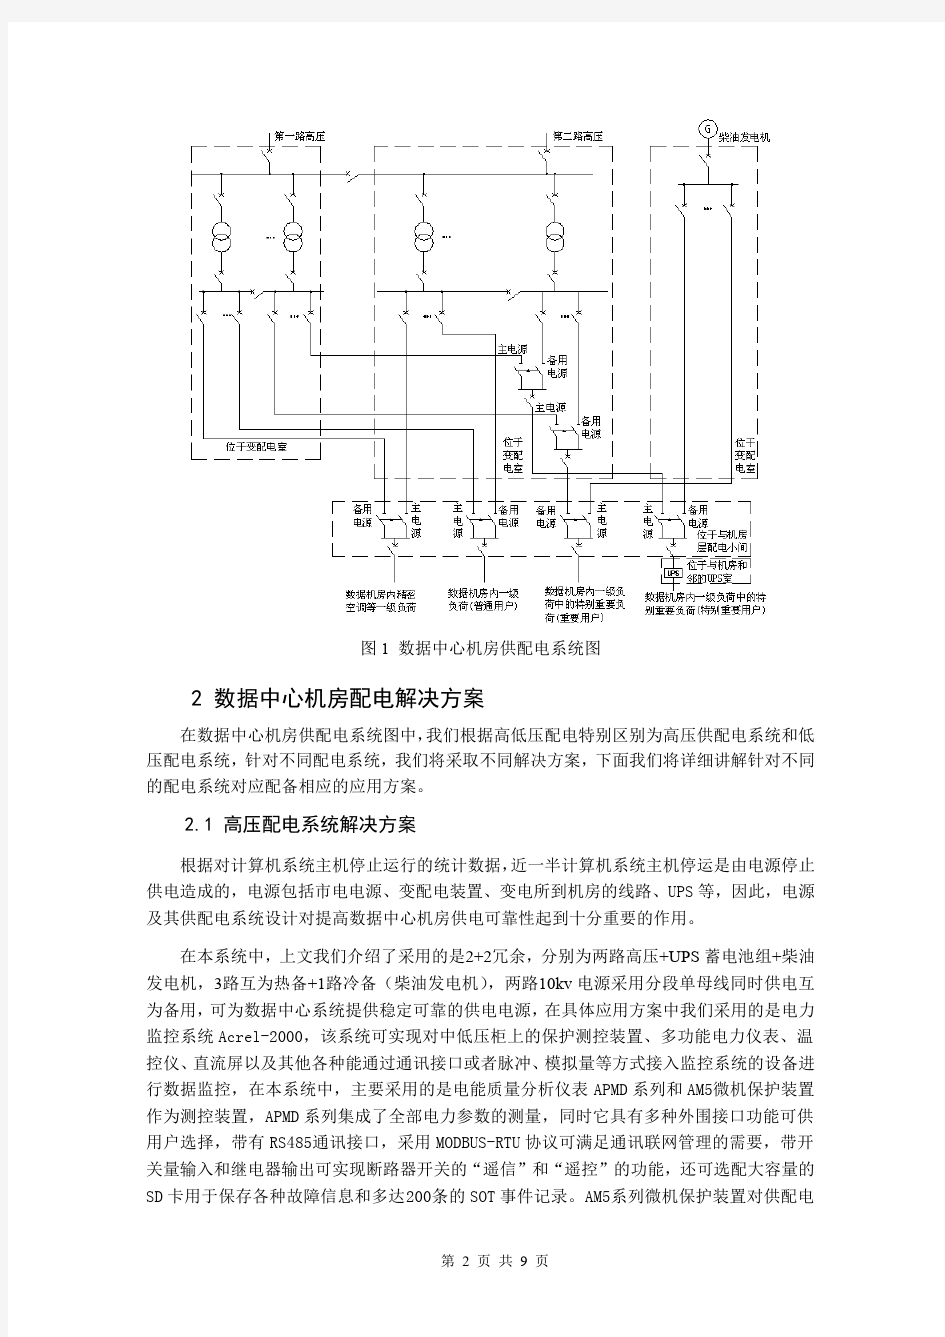 江苏安科瑞数据中心机房电气系统设计与监控产品选型